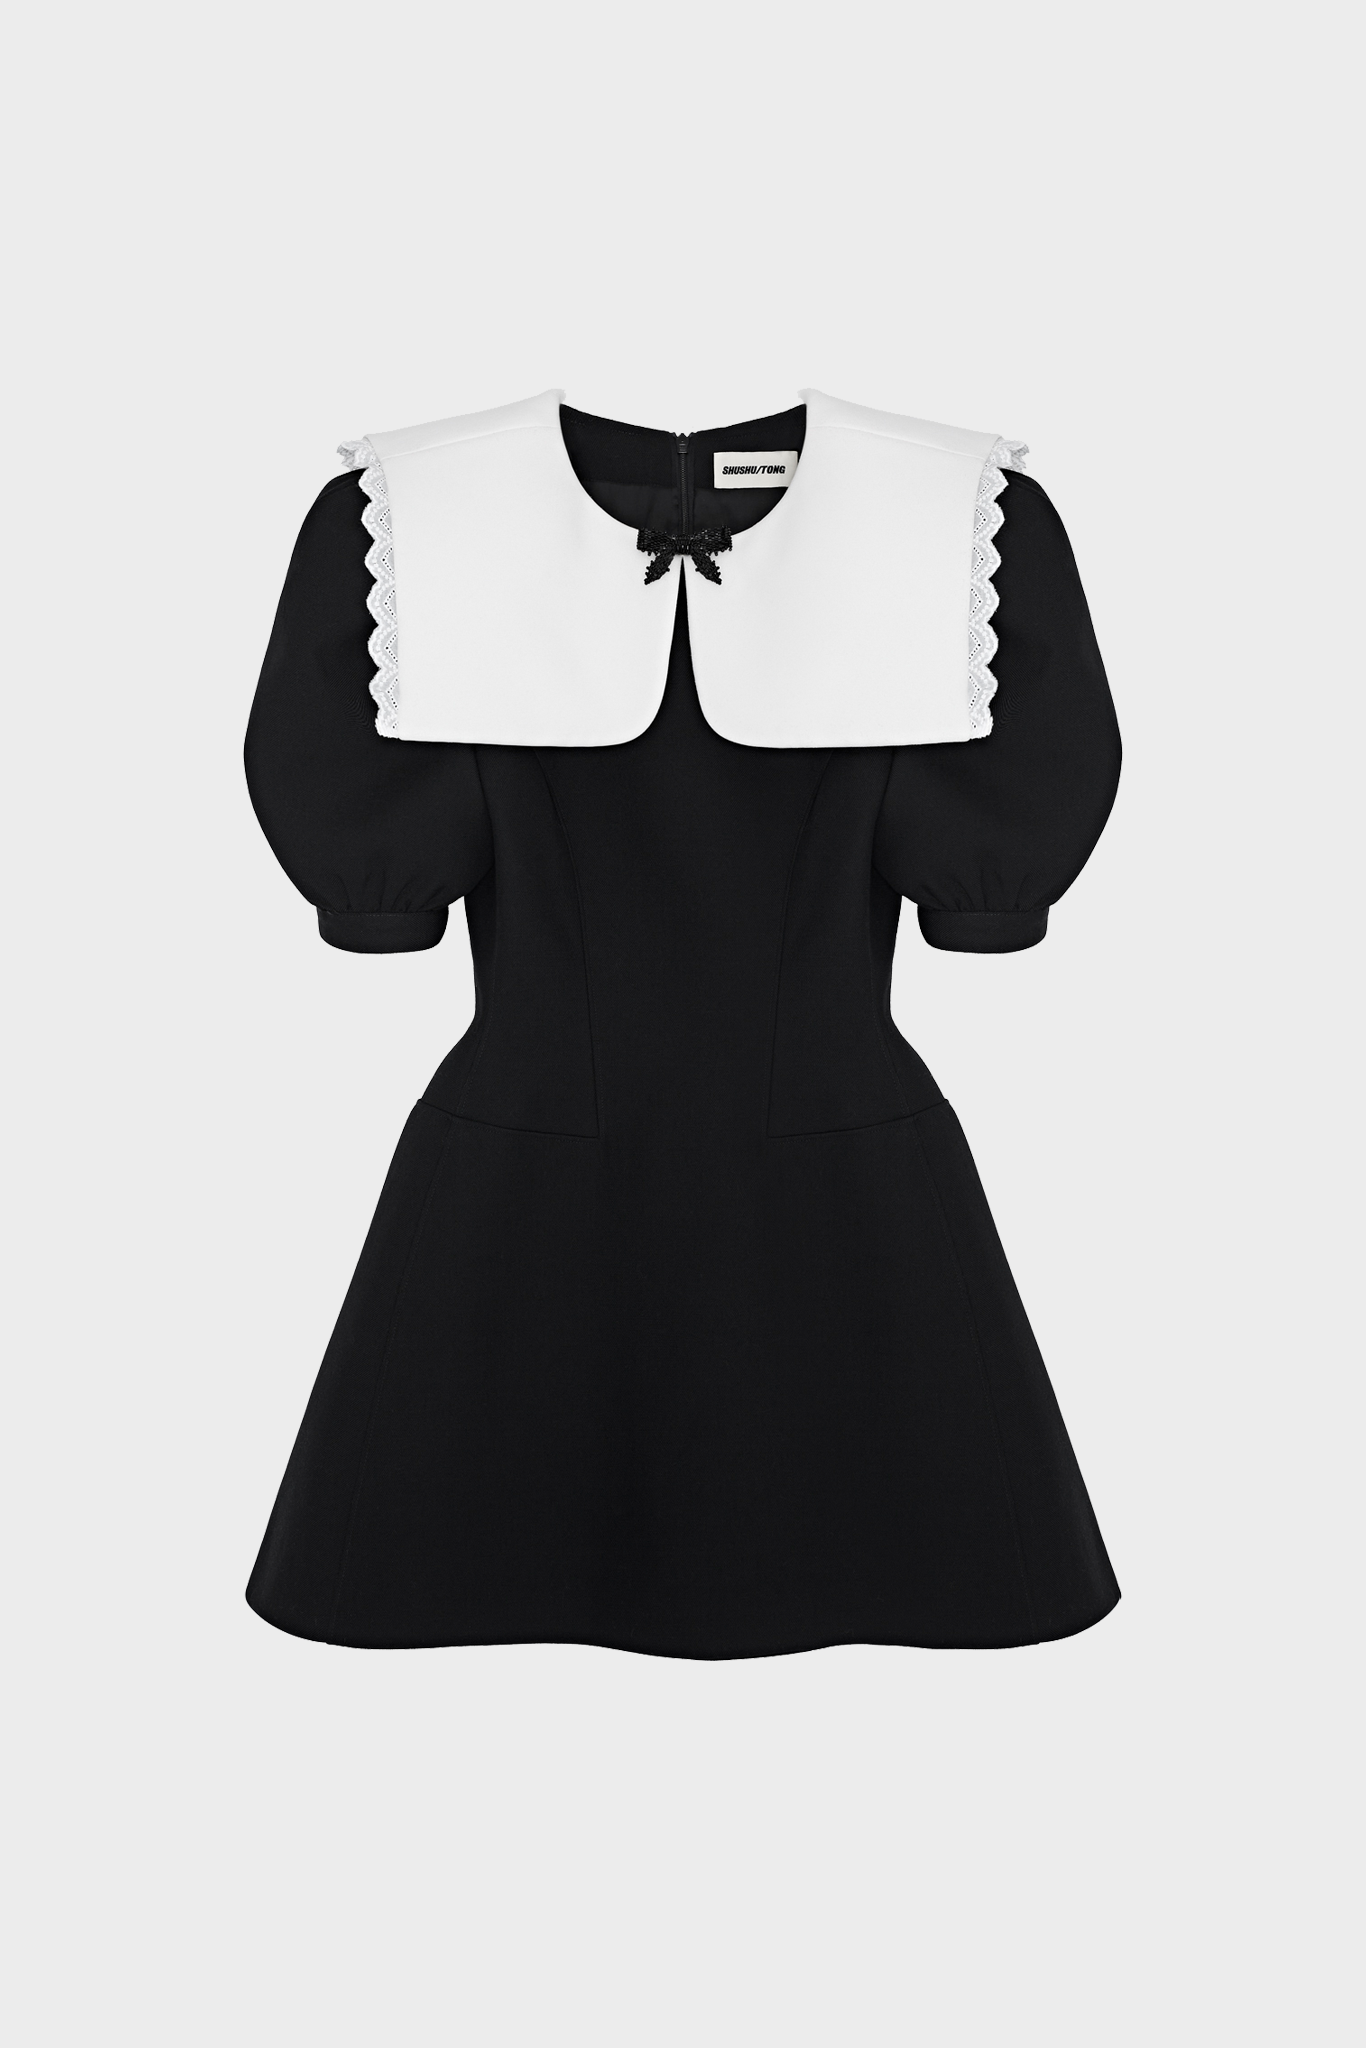 Shushu Tong - Oversized Collar Dress – Simonett